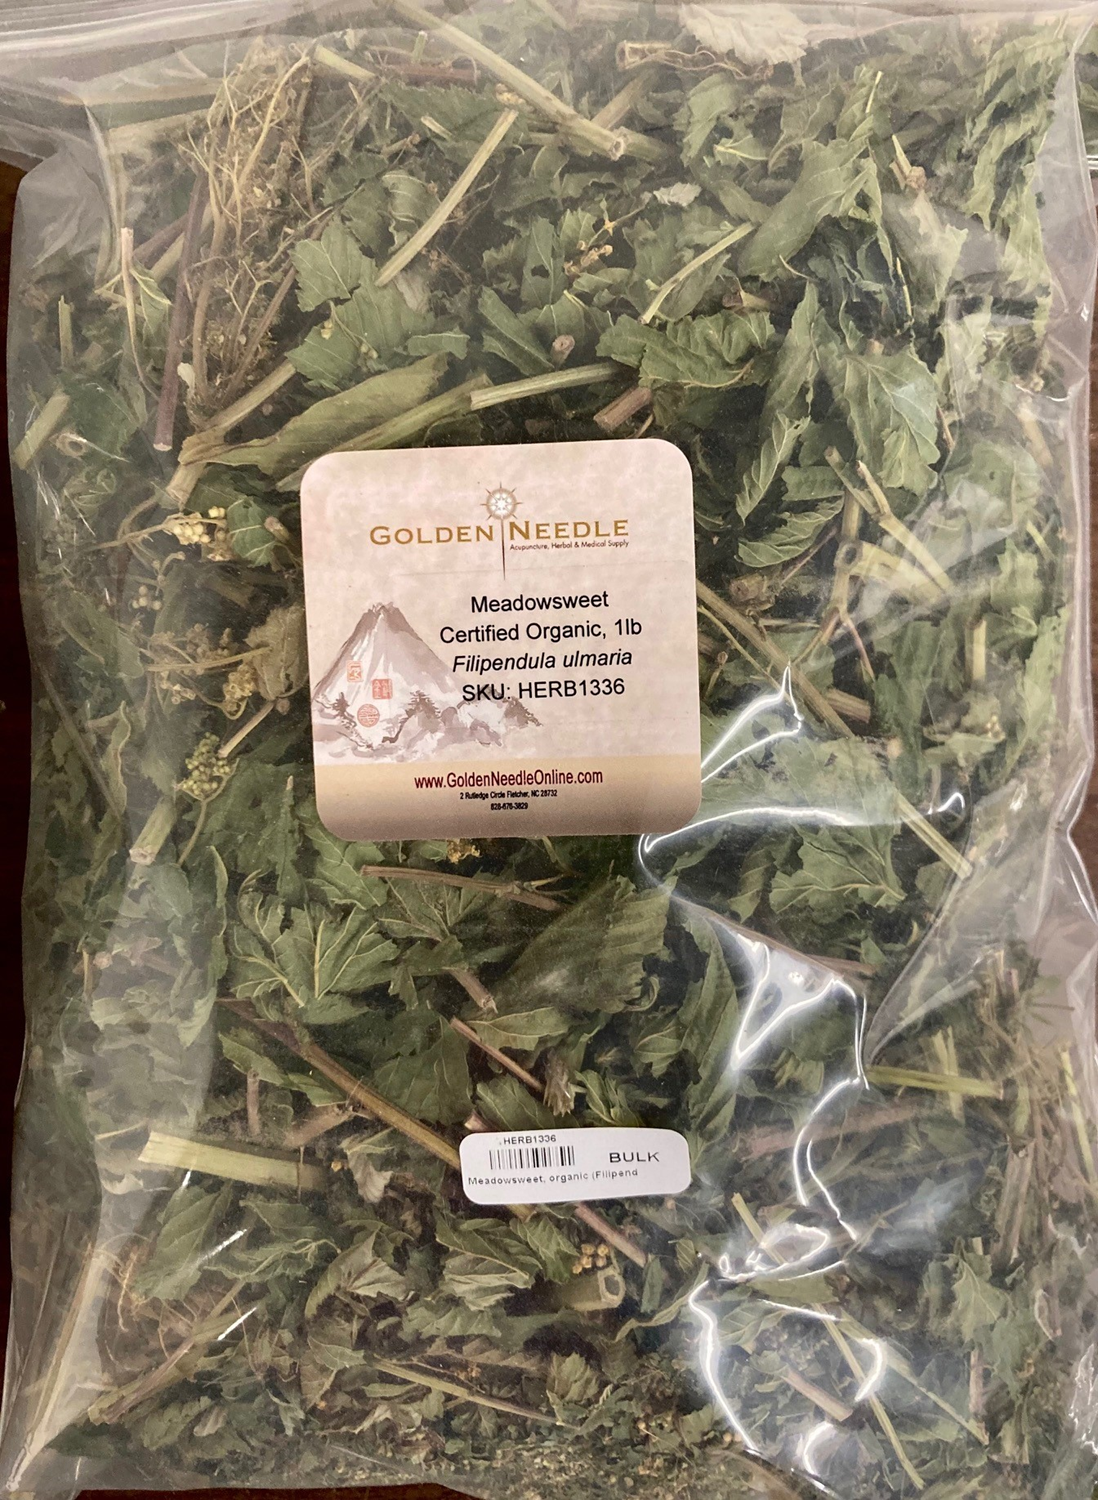 Meadowsweet, certified organic (Filipendula ulmaria)